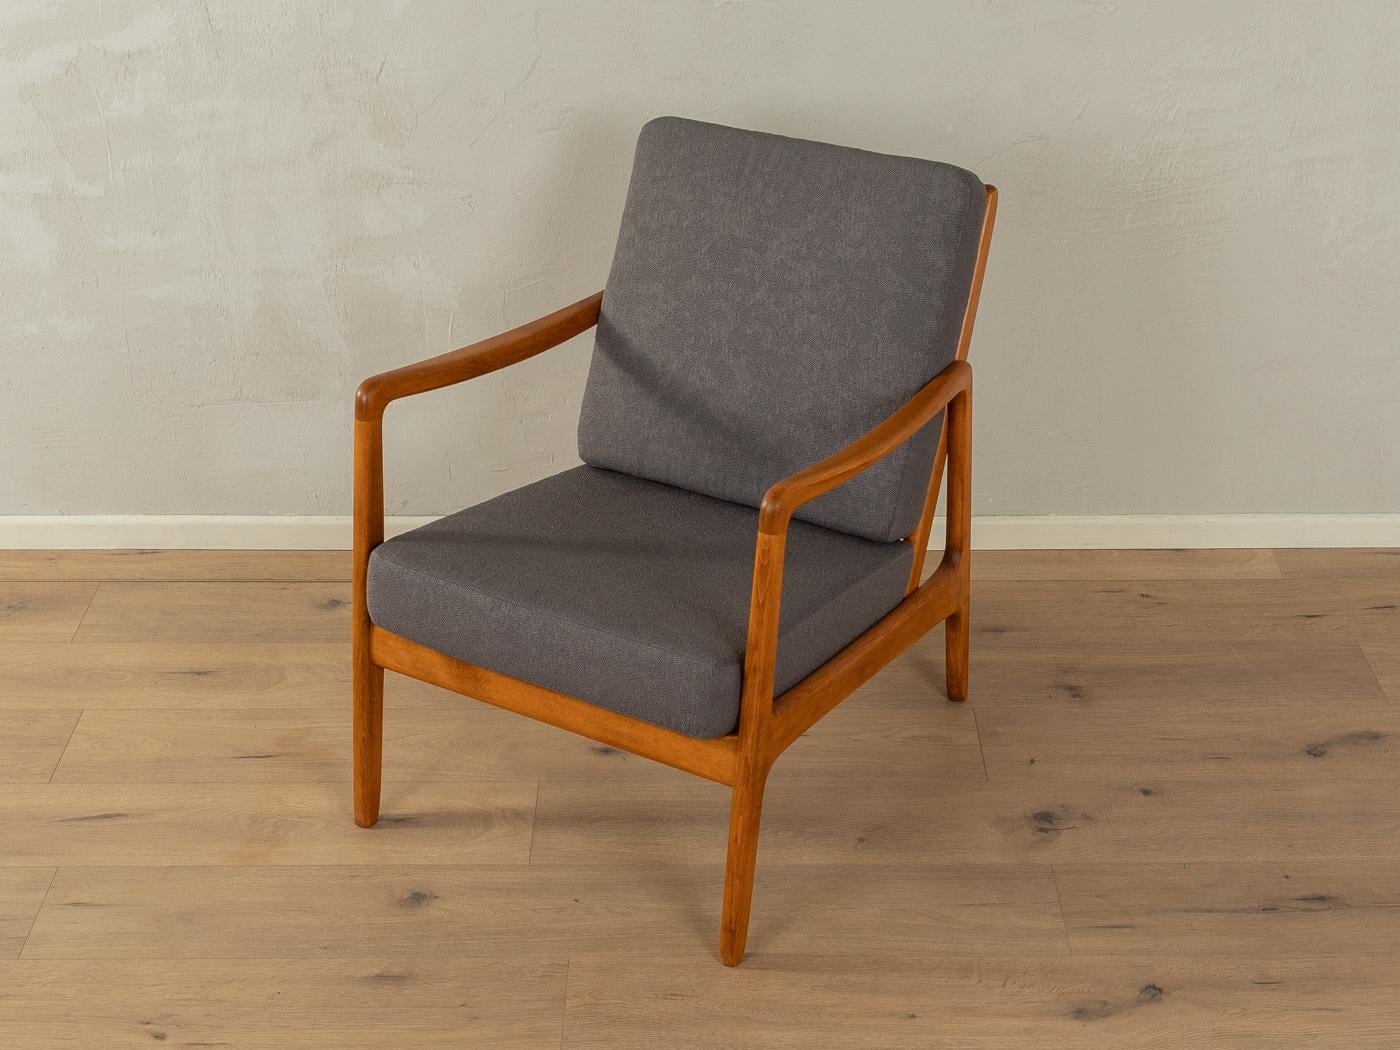 Eleganter Sessel aus den 1950er Jahren von Ole Wanscher für France & Daverkosen. Das seltene Modell FD-109 hat einen Rahmen aus massiver Buche, gebeizt in Teakholz, mit einer schrägen, offenen Rückenlehne und abgewinkelten Beinen für eine organische